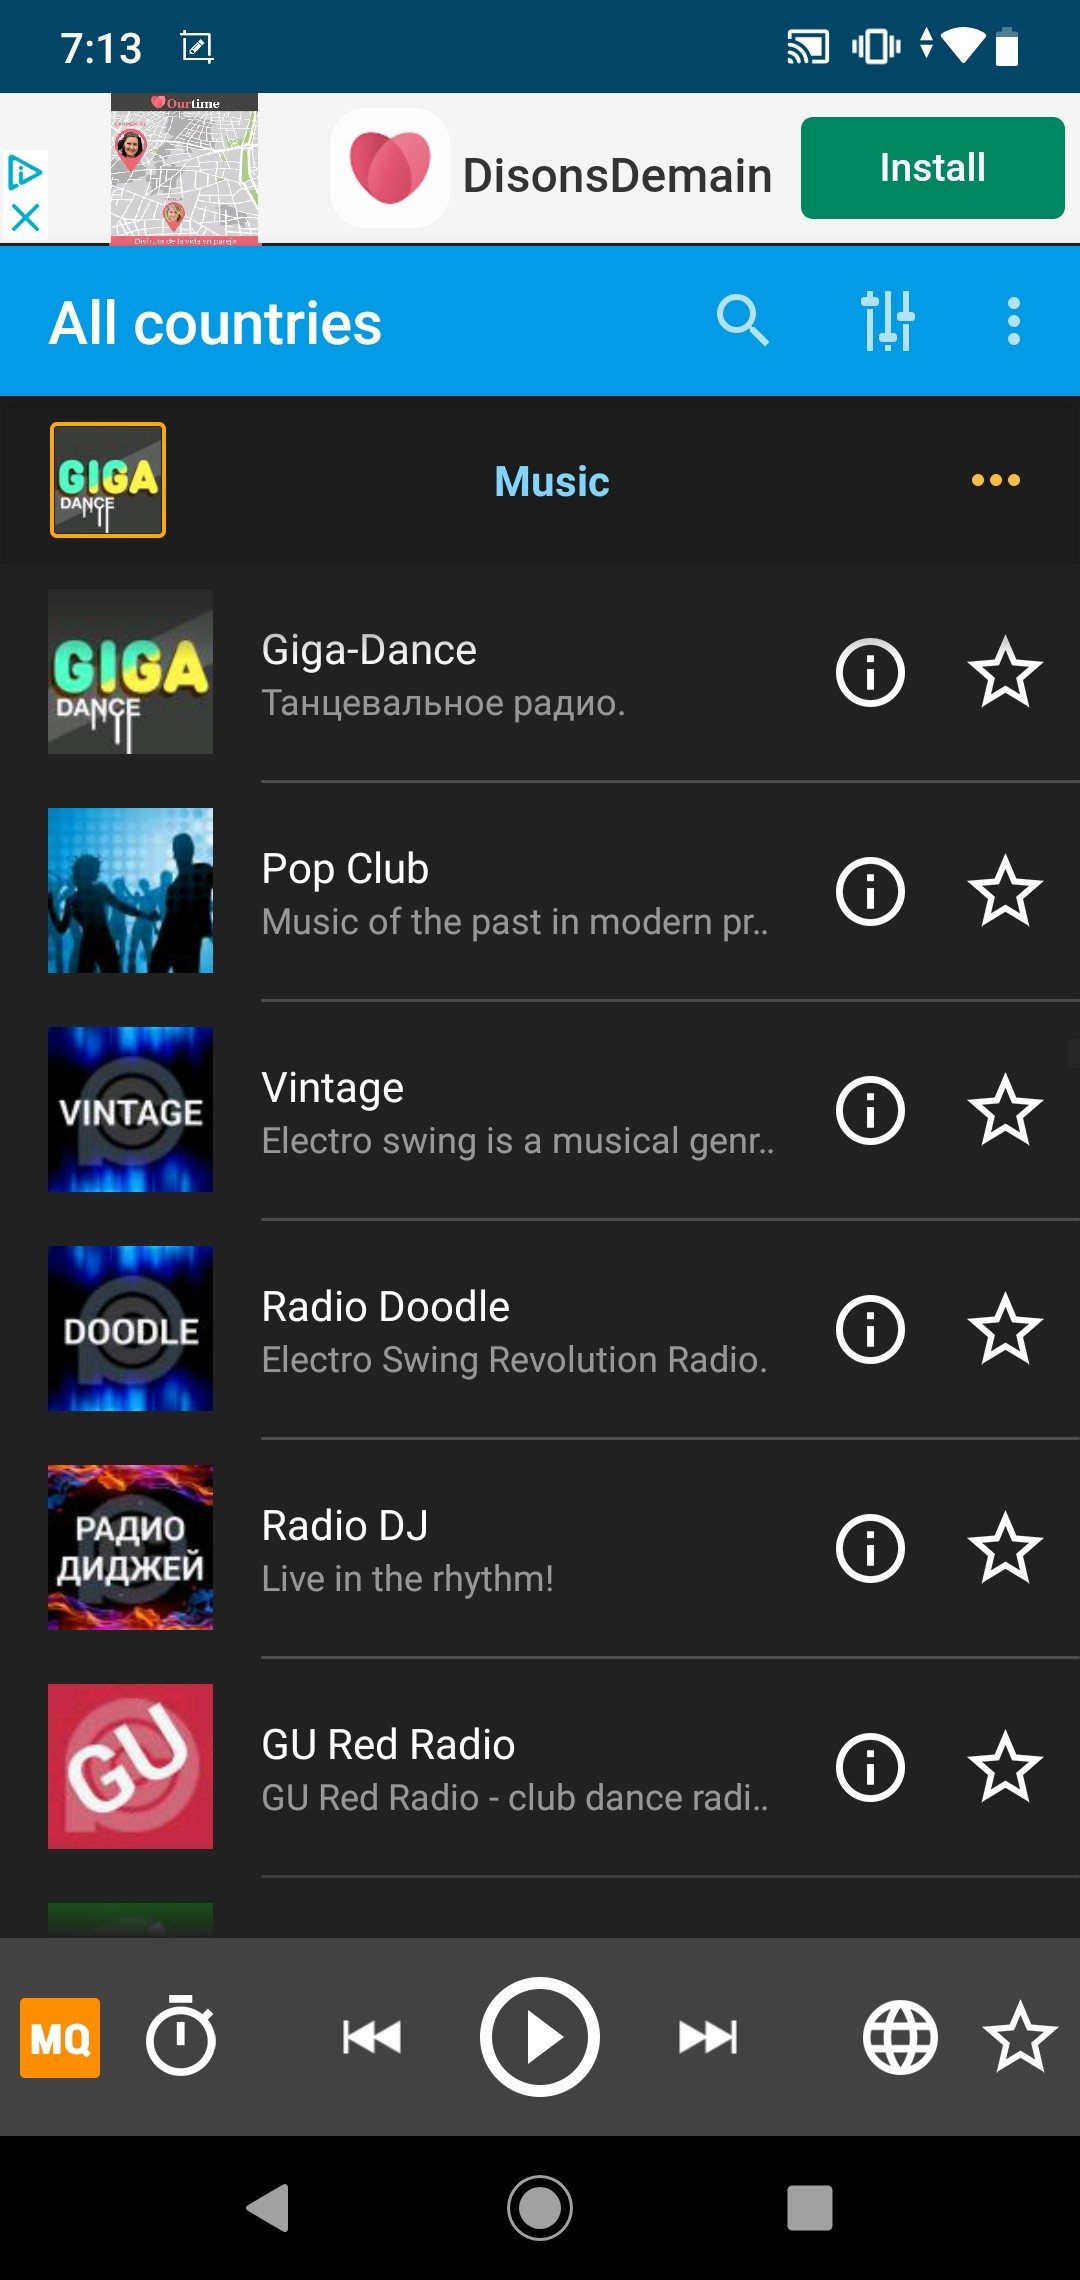 PCRADIO Radio Online .2 - Скачать для Android APK бесплатно